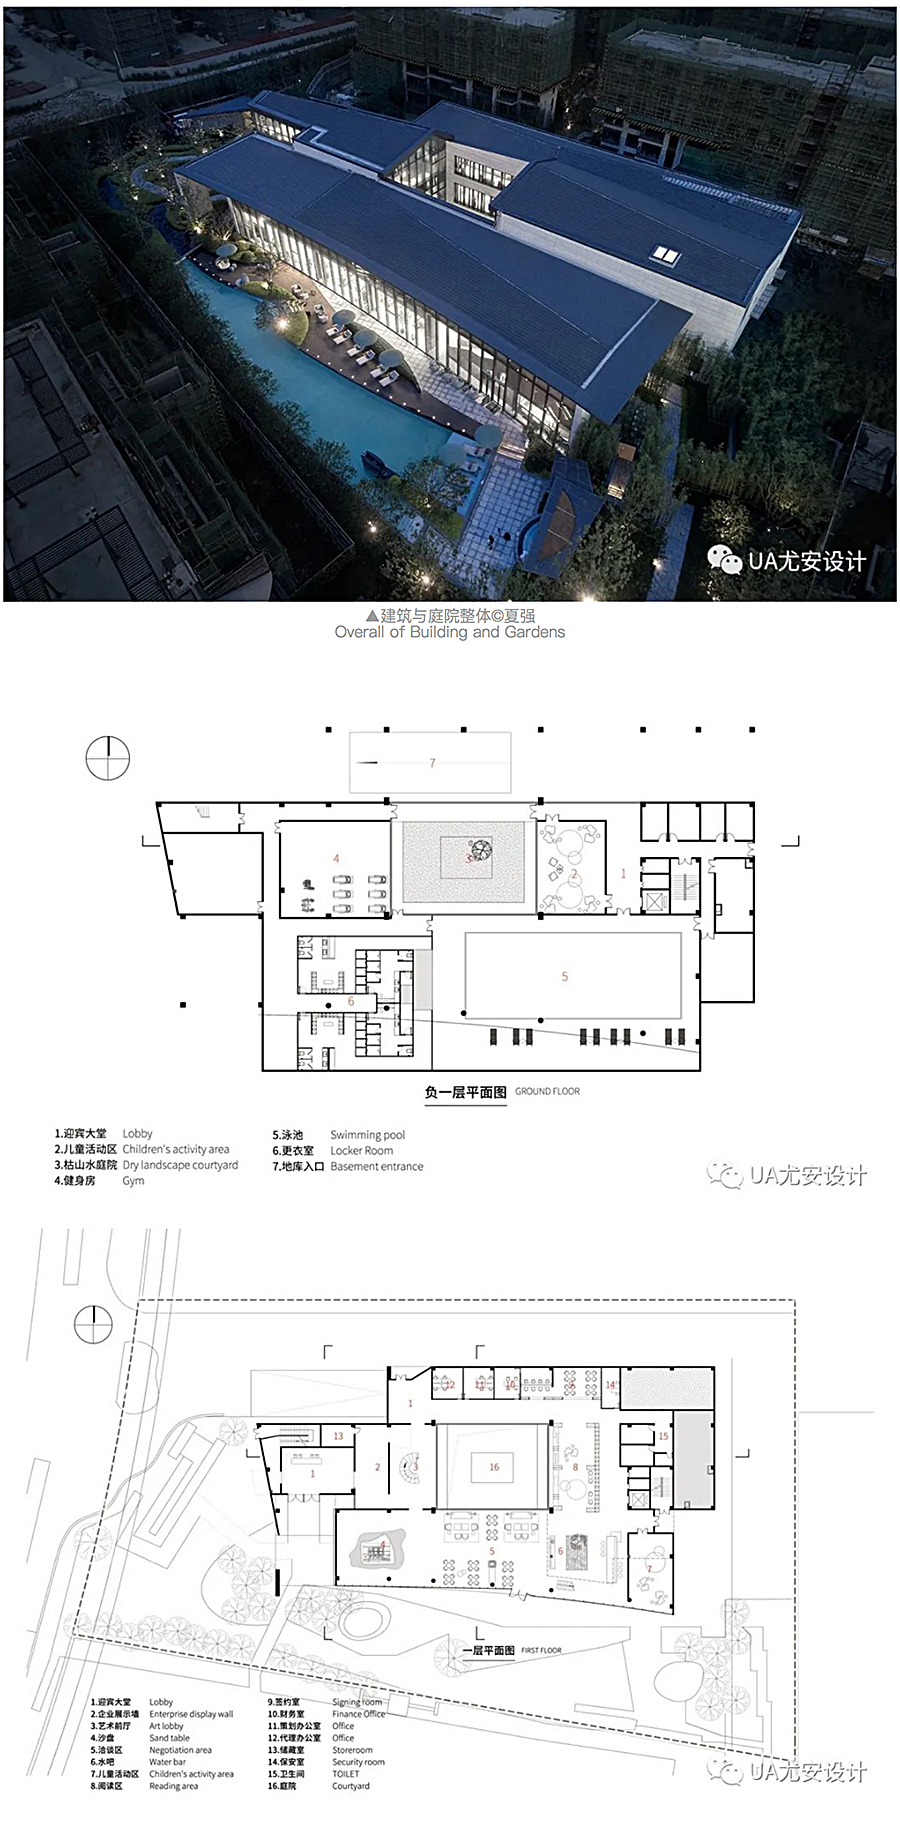 上海中信泰富-_-仁恒海和院展示中心_0012_图层-13.jpg